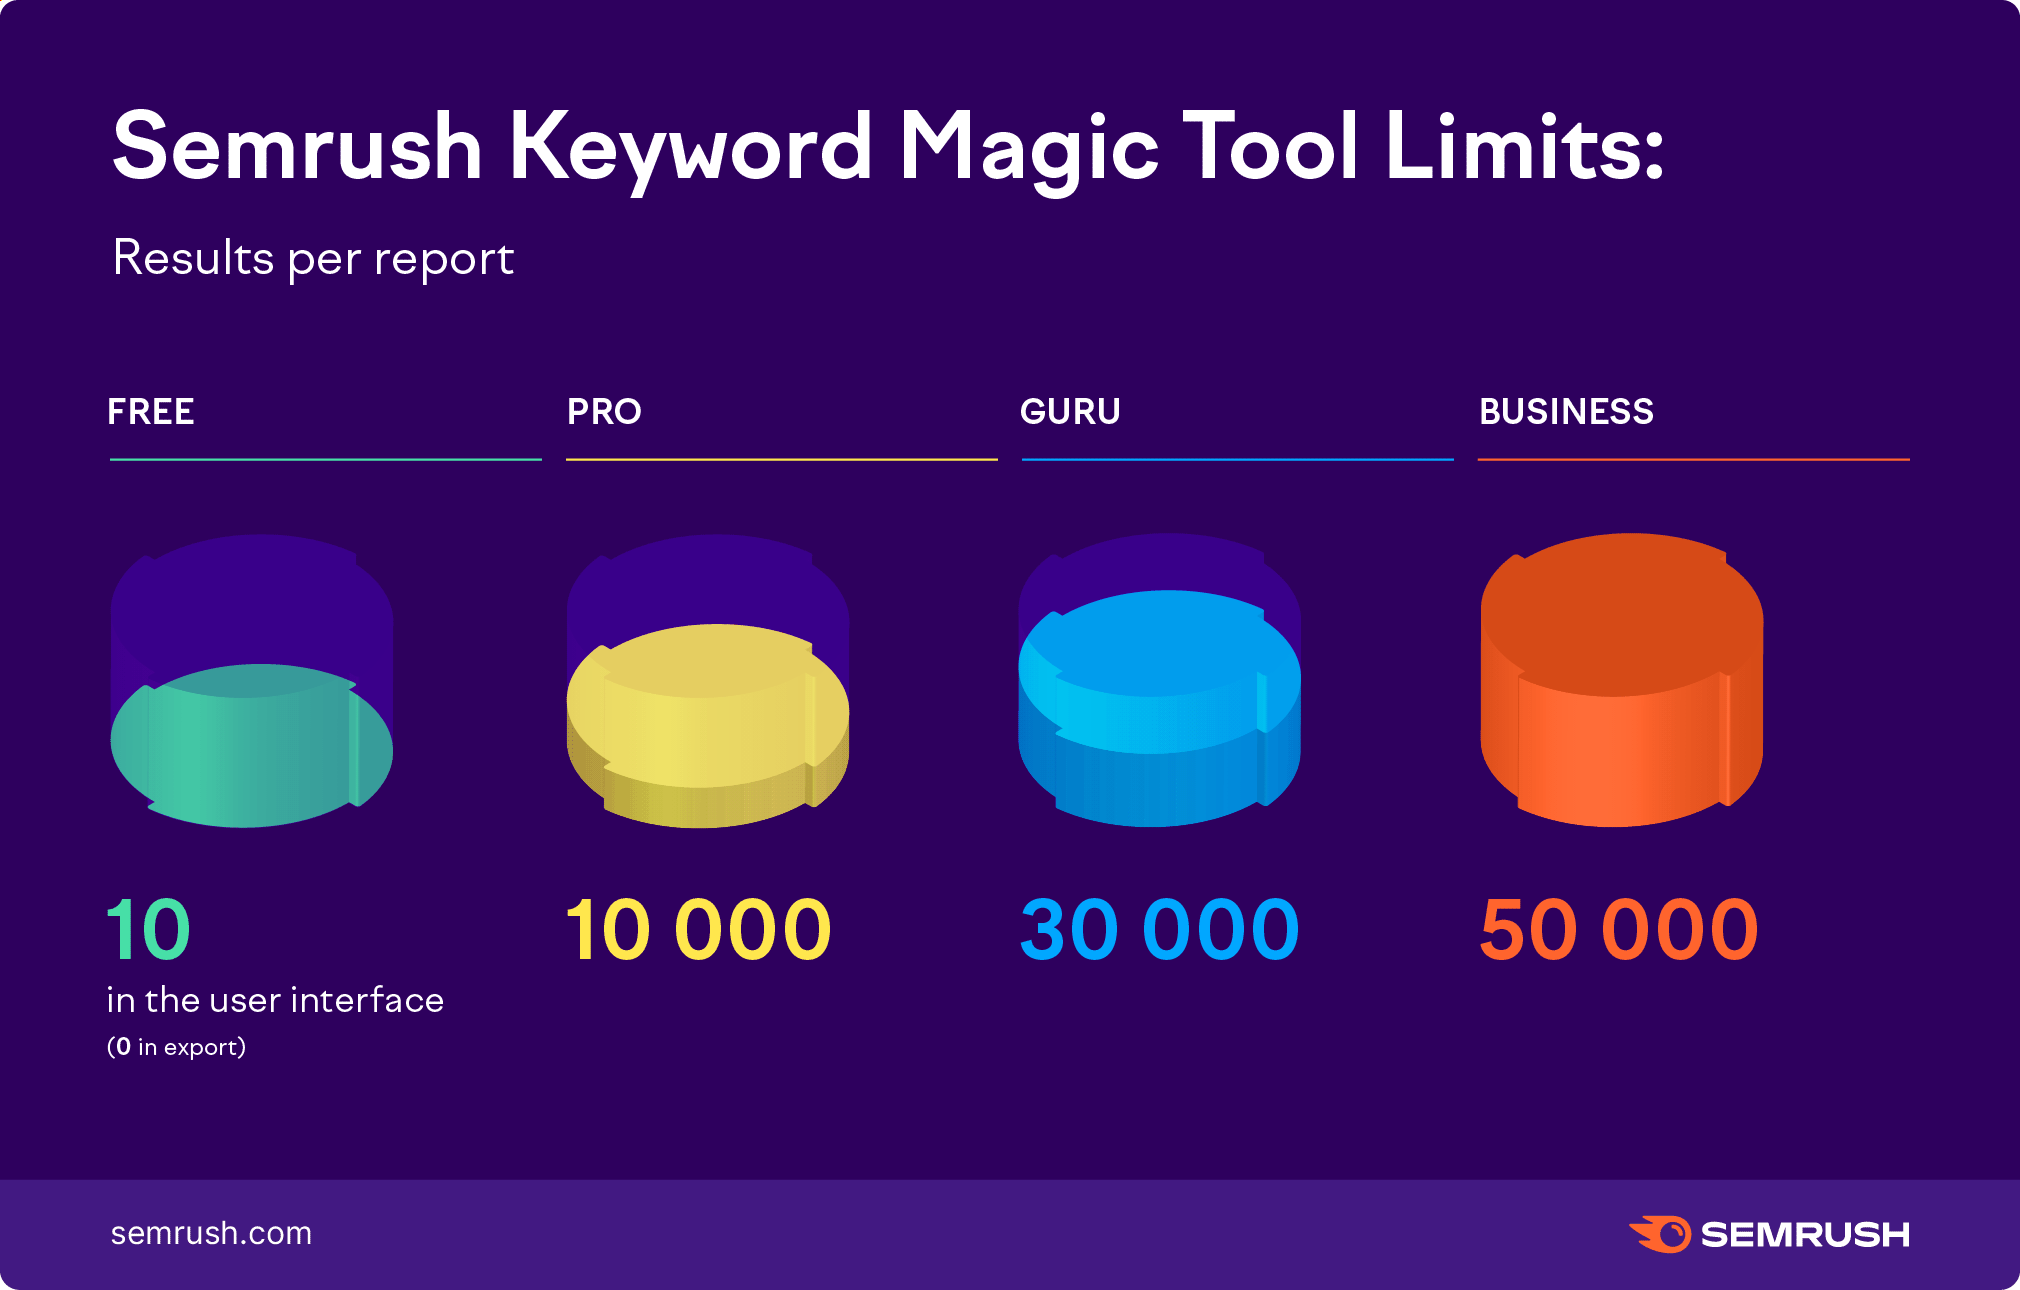 Limiti di Keyword Magic Tool di Semrush: risultati per report. Gratis - 10 nell'interfaccia utente, nessuna esportazione, Pro - 10.000, Guru - 30.000, Business - 50.000. 